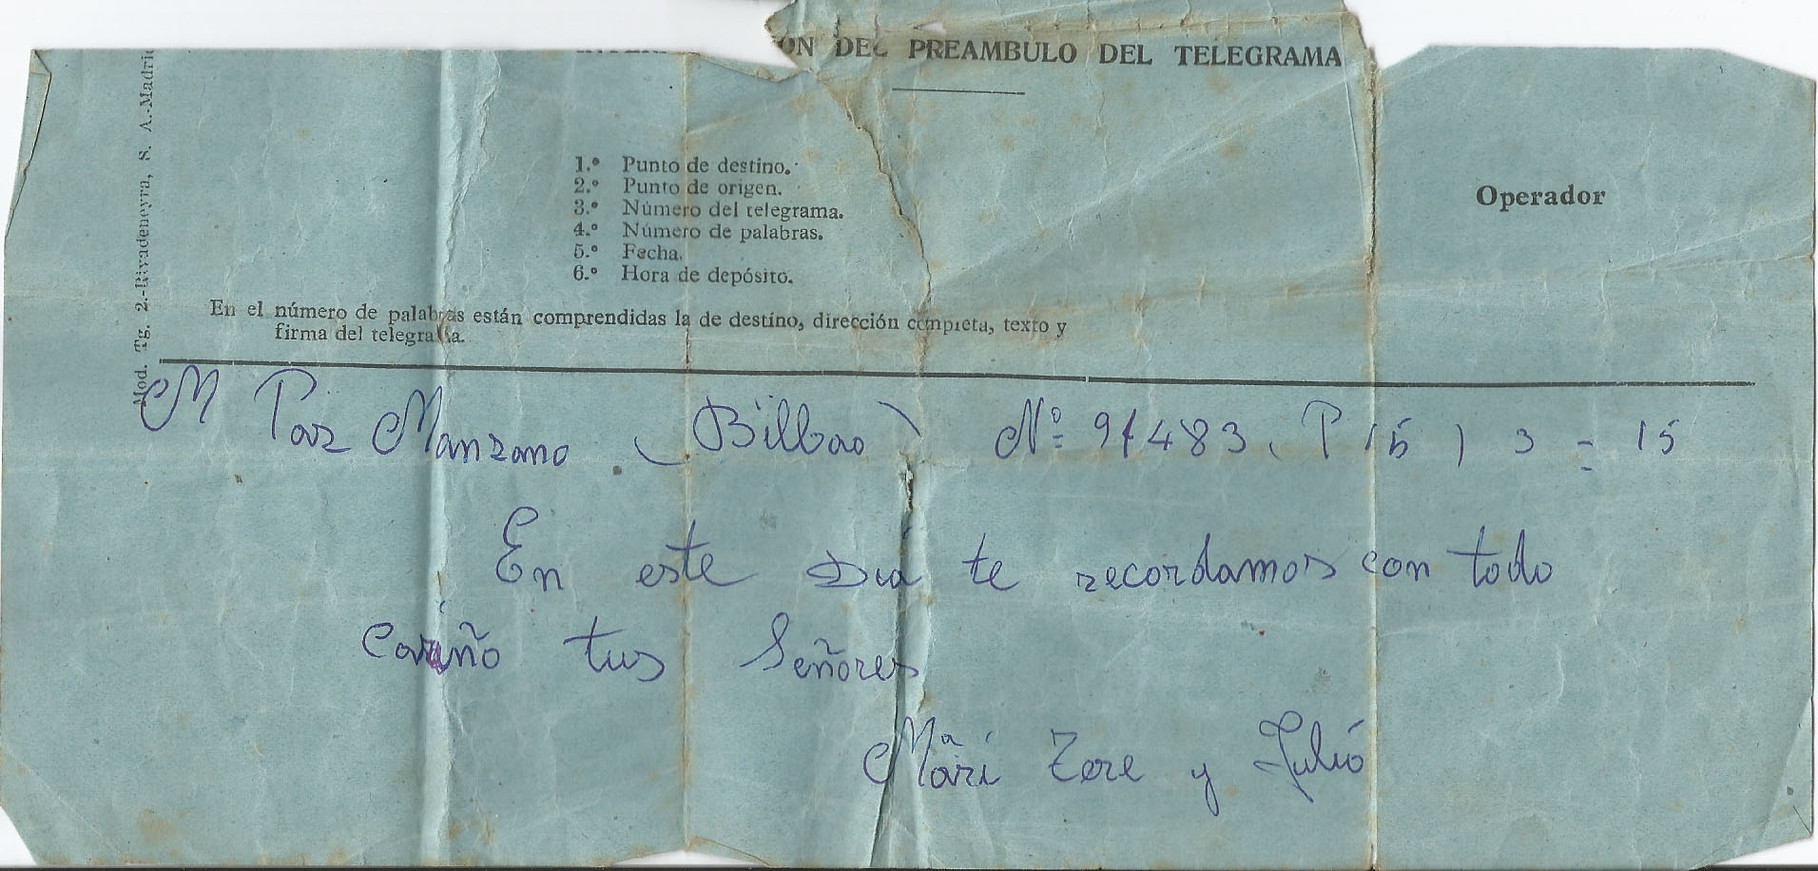 1960 Mayo Telegrama para Mª Paz Manzano en el día de su boda de sus señores